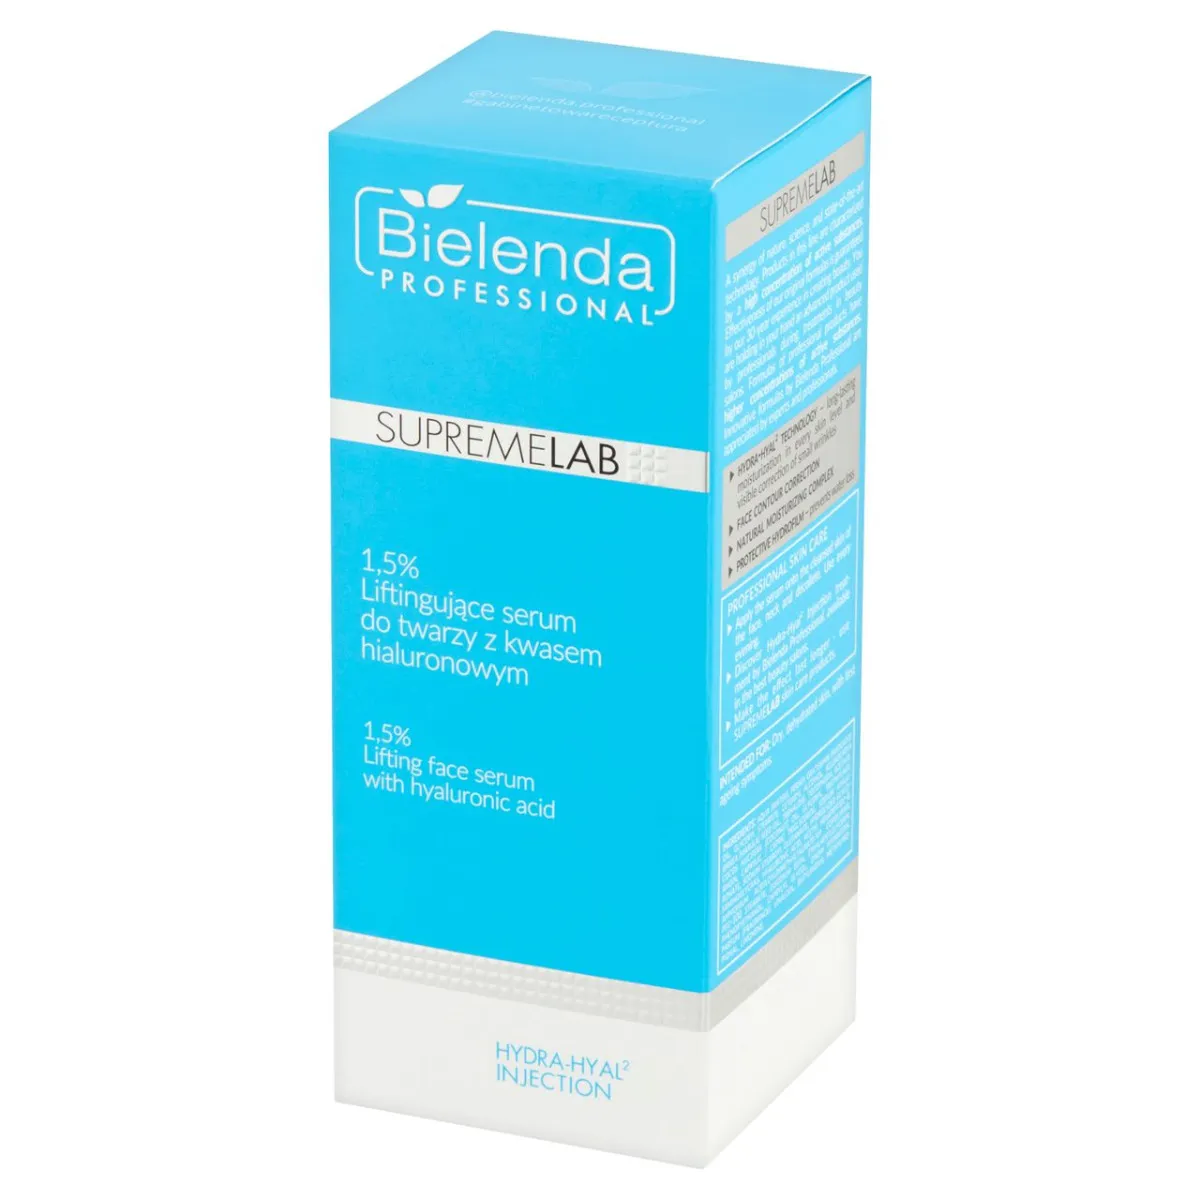 Bielenda Professional SupremeLab, 1,5% liftingujące serum do twarzy z kwasem hialuronowym, 50 g 